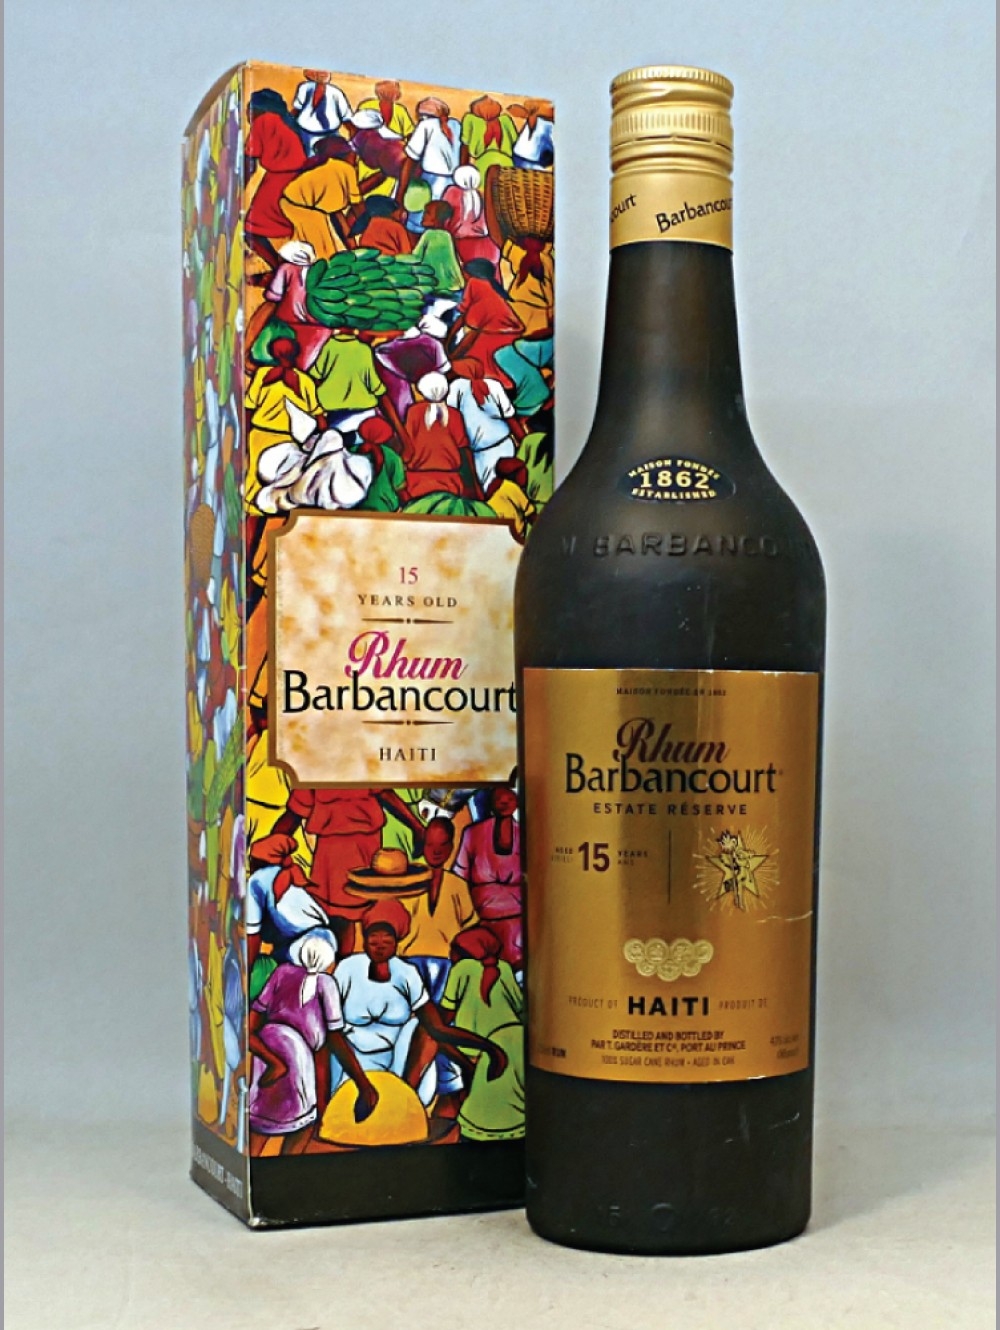 Barbancourt - 3 stars 4 years | Rum from Haiti